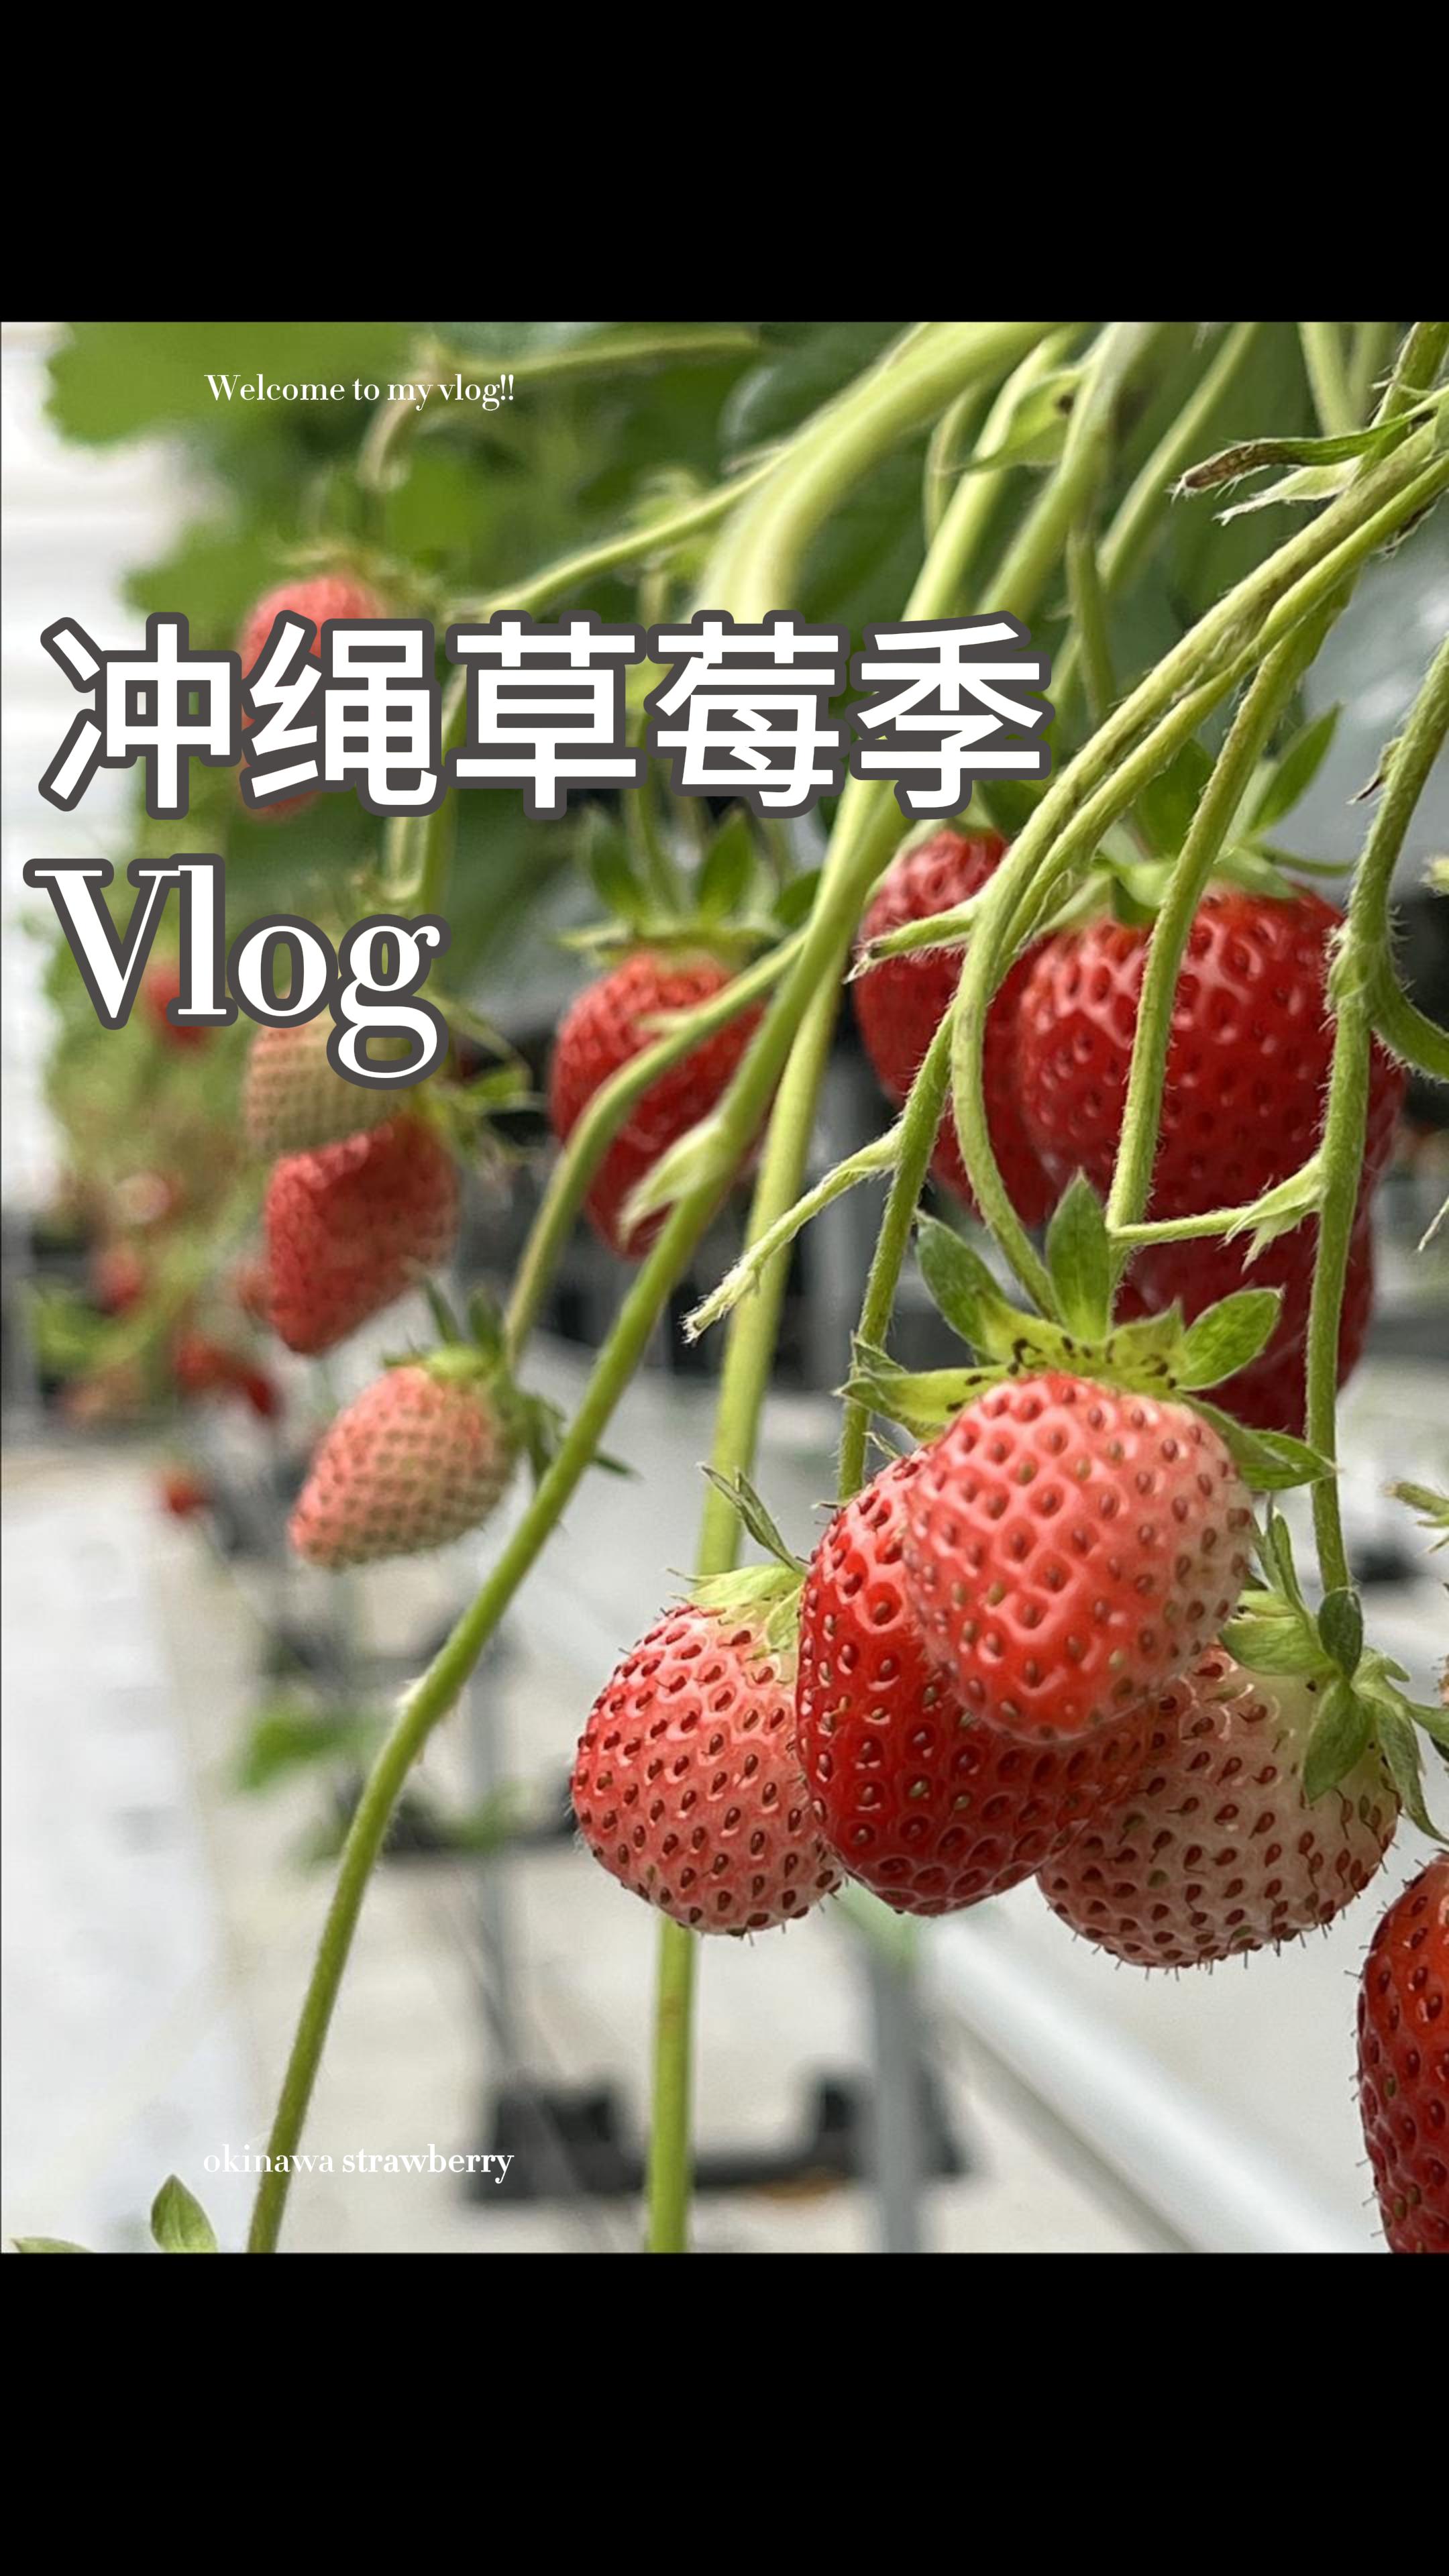 春节期间来冲绳草莓吃到饱